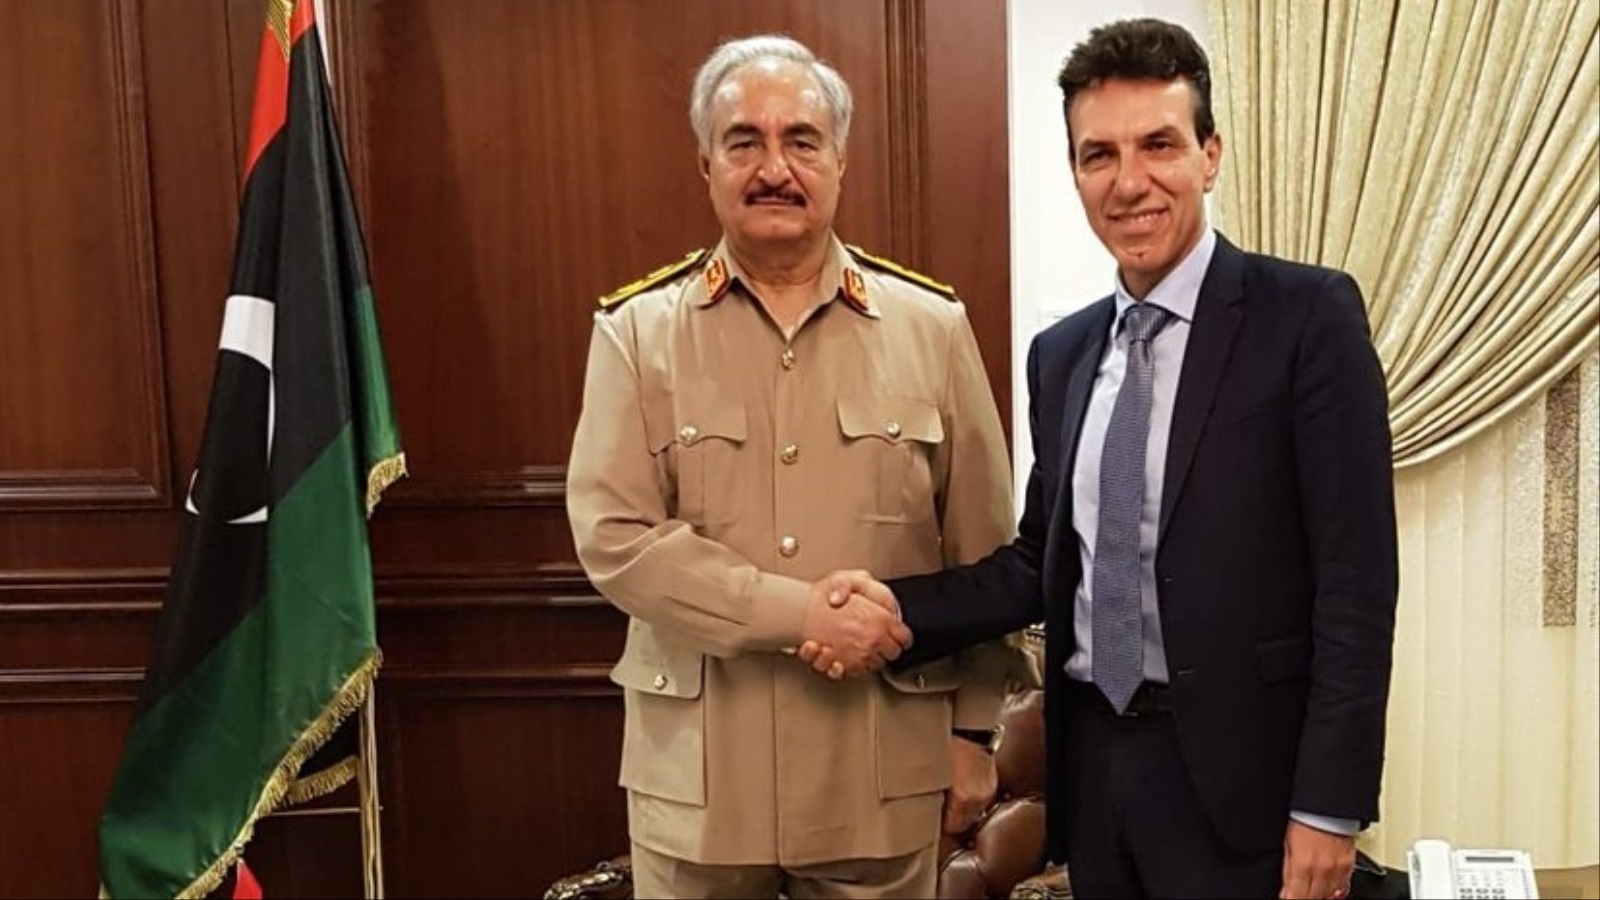 صورة تجمع السفير الإيطالي لدى طرابلس بخليفة حفتر